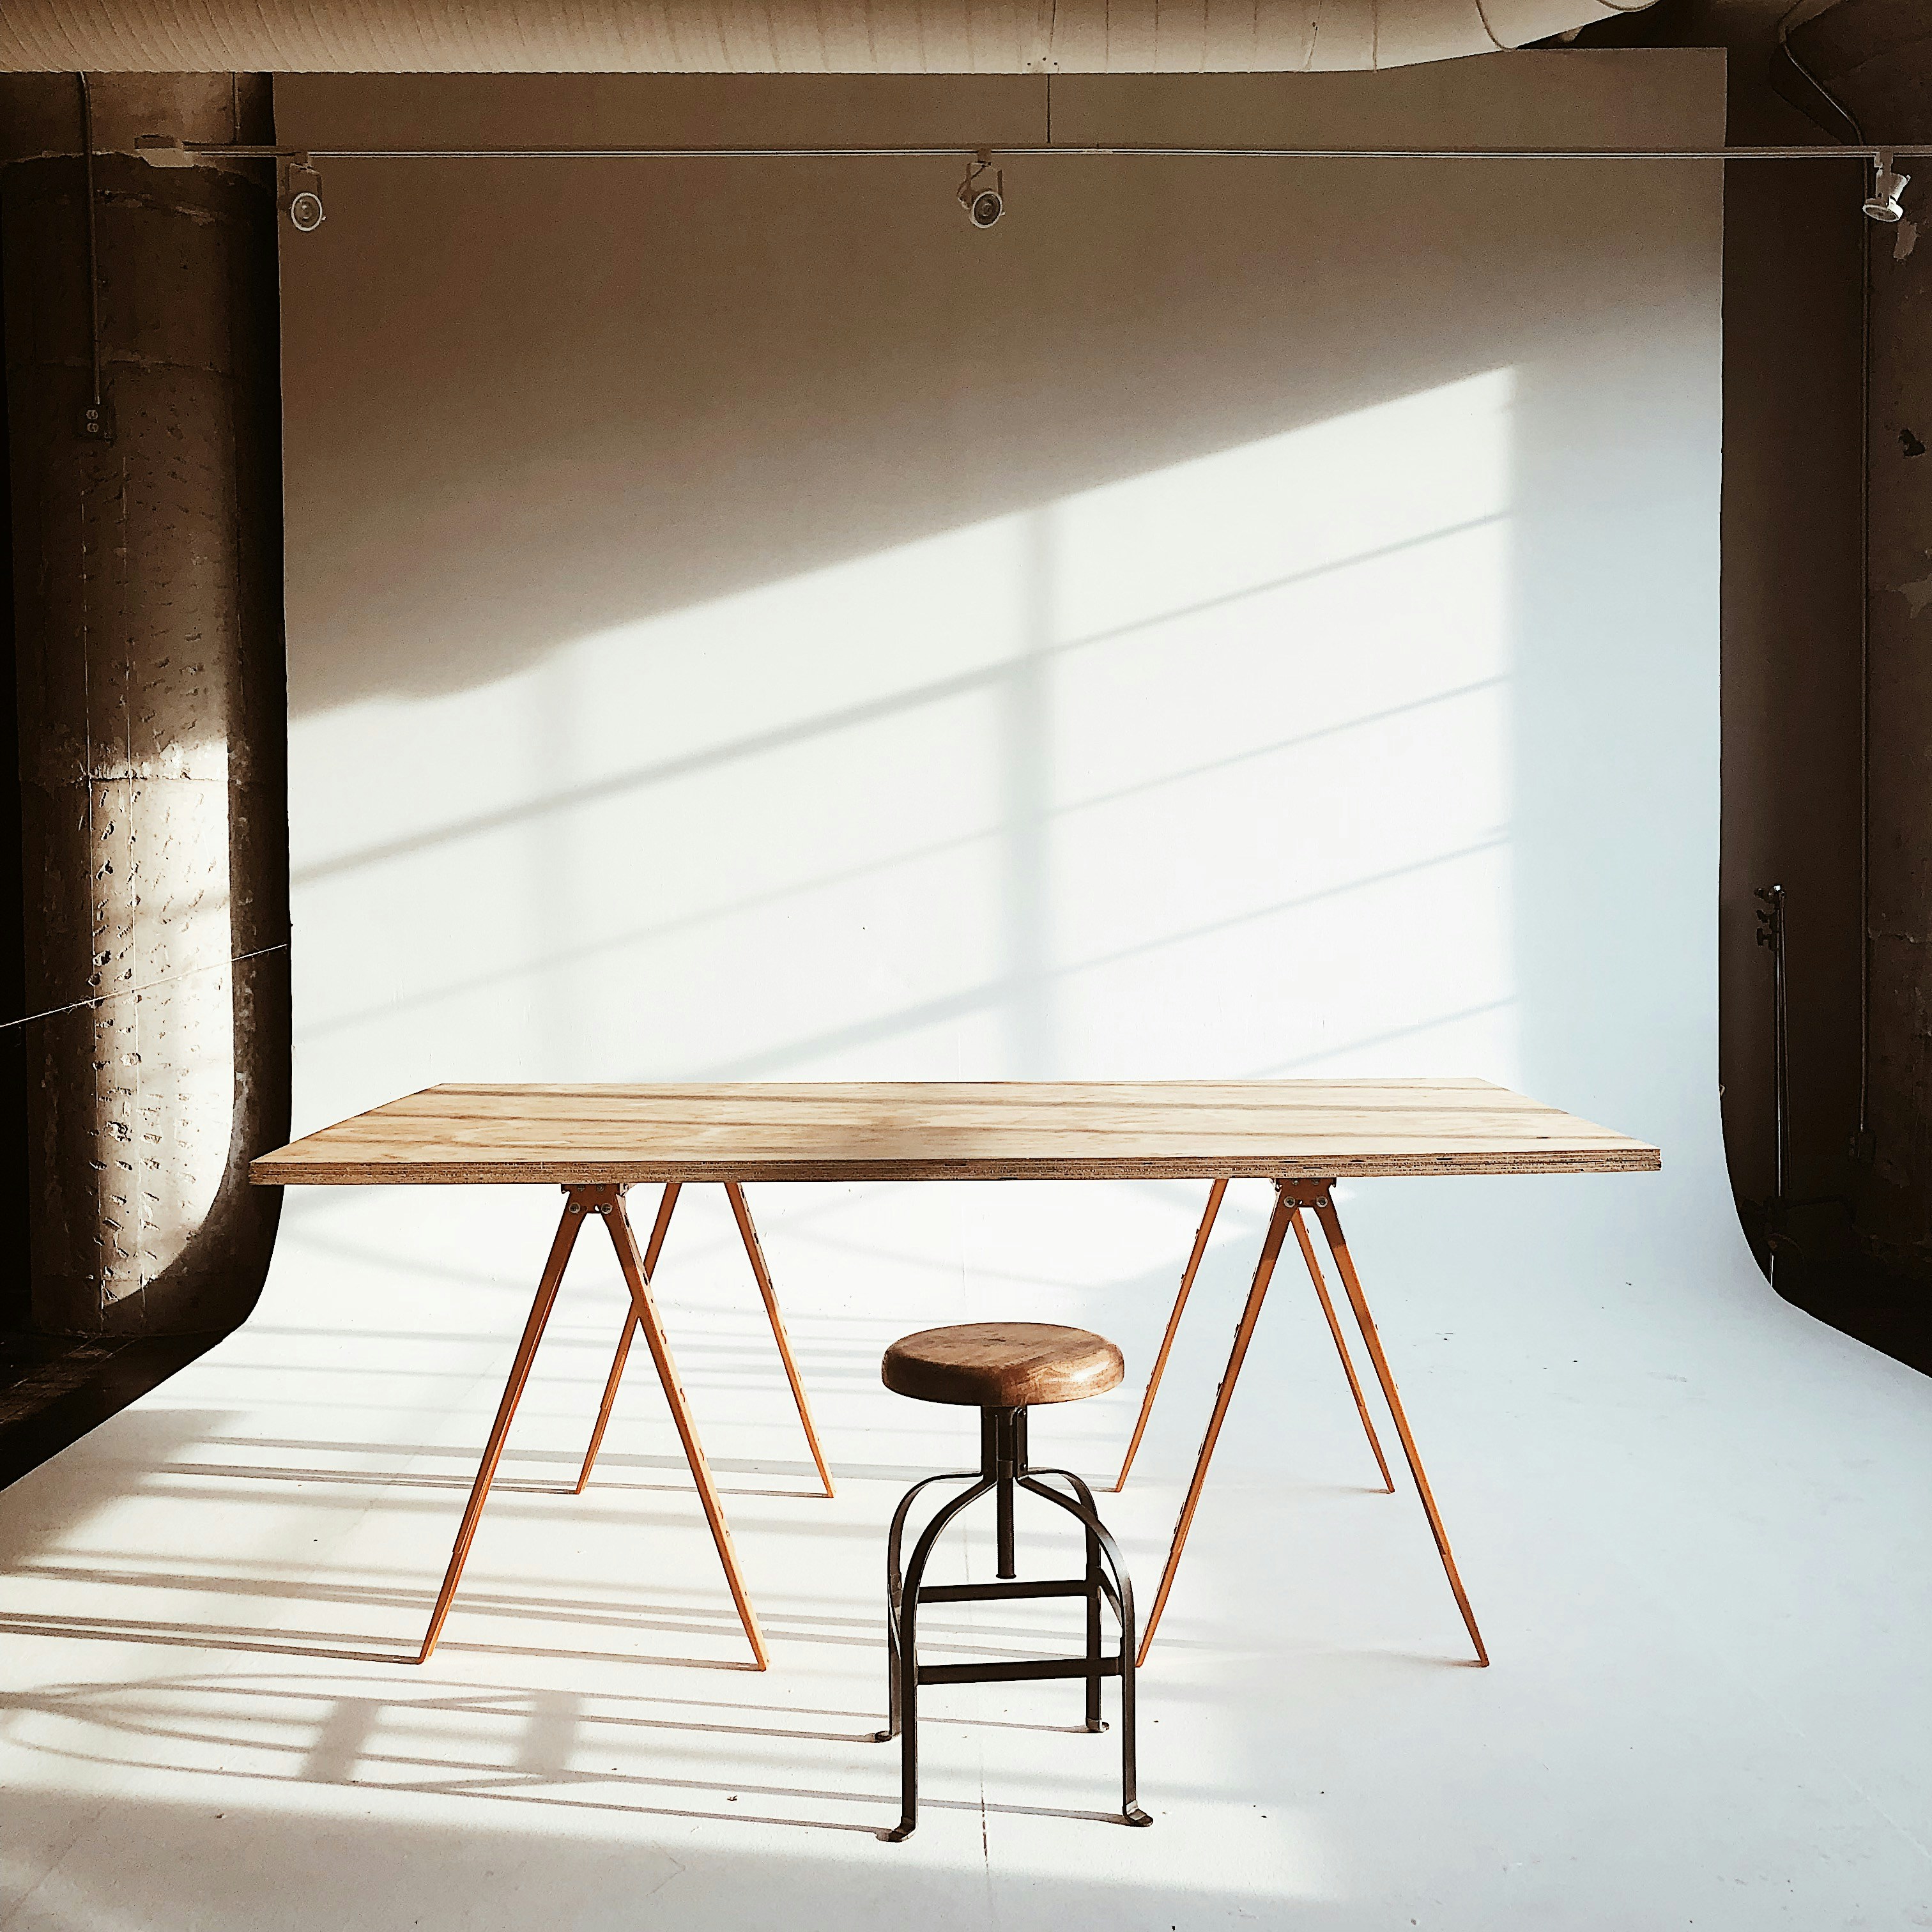 Drewniane stoły na zamówienie - unikalne meble dla Twojego wnętrza